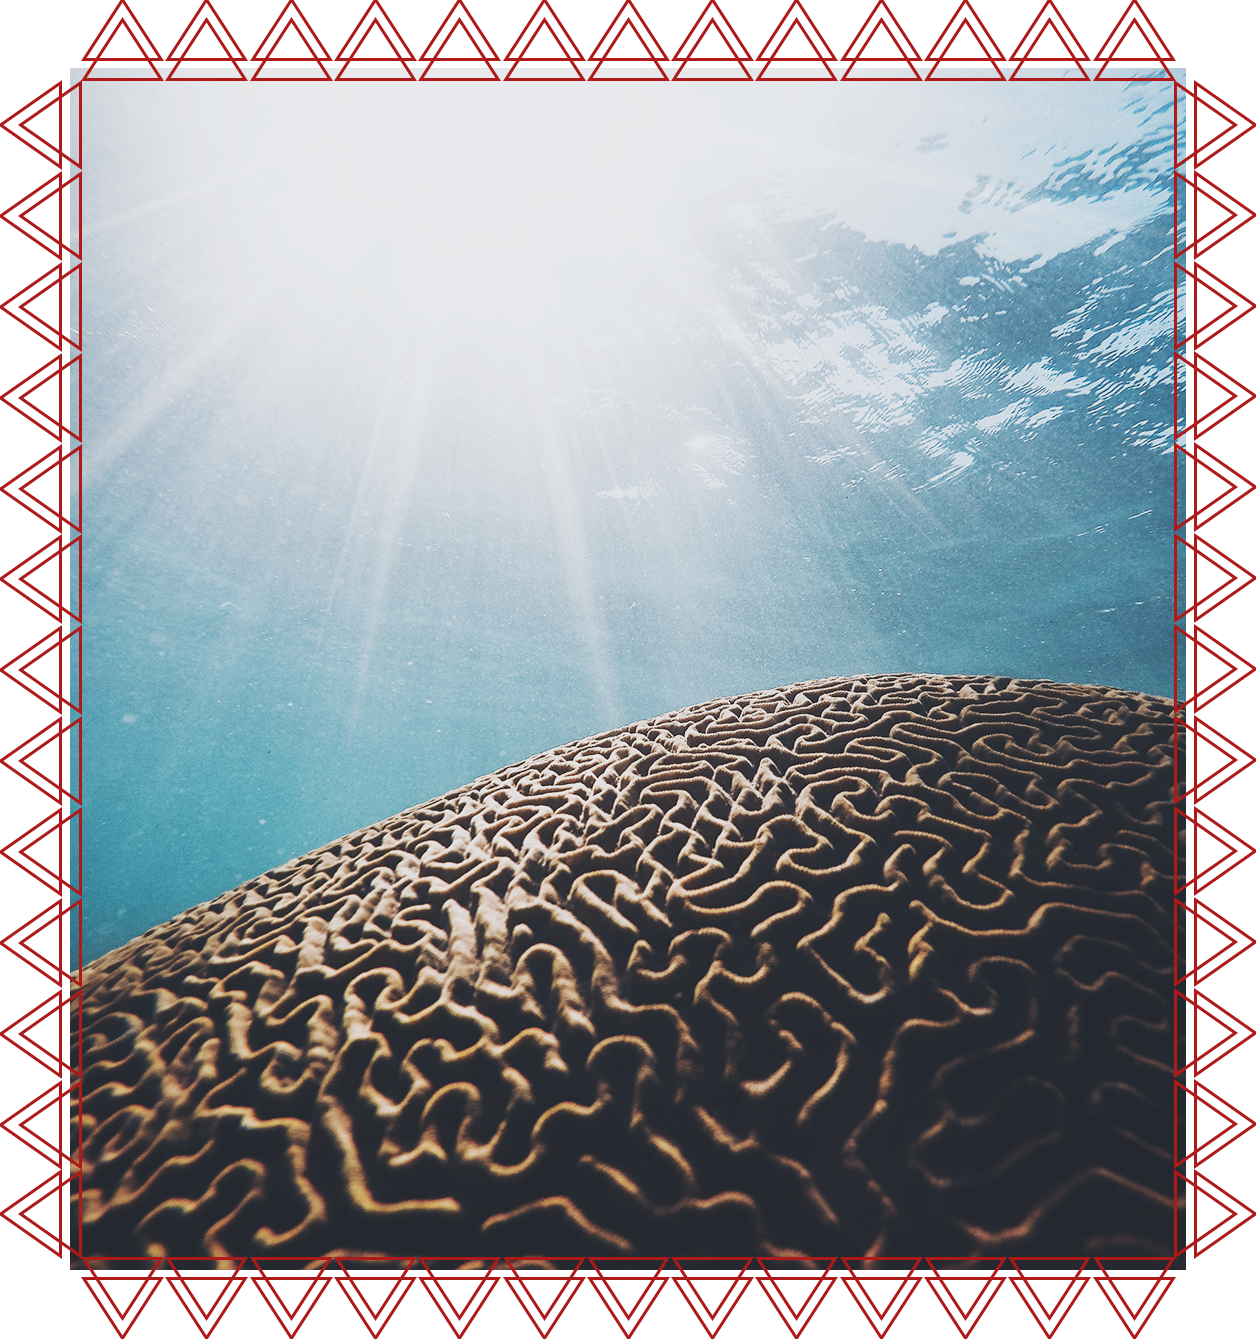 IACFS Schamanisches Wissen - Der Erleuchtung auf der Spur - Koralle die an menschliches Gehirn erinnert und Sonnenschein